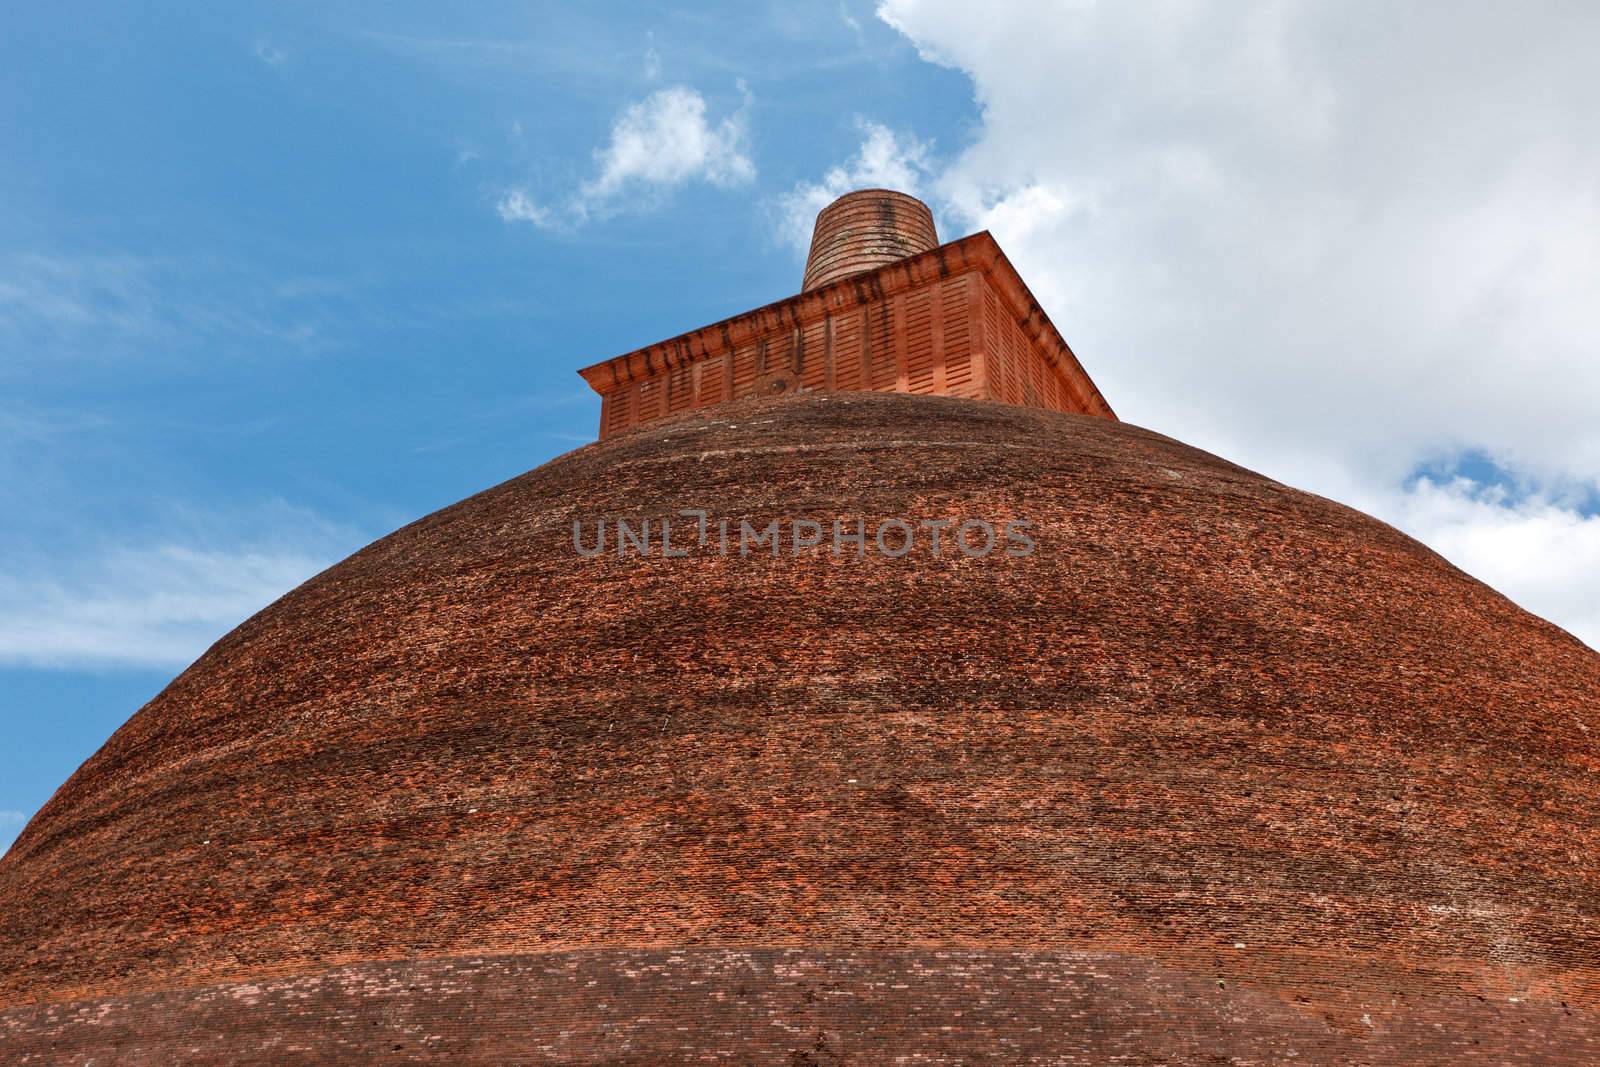 Jetavaranama dagoba  (stupa). Anuradhapura, Sri Lanka by dimol